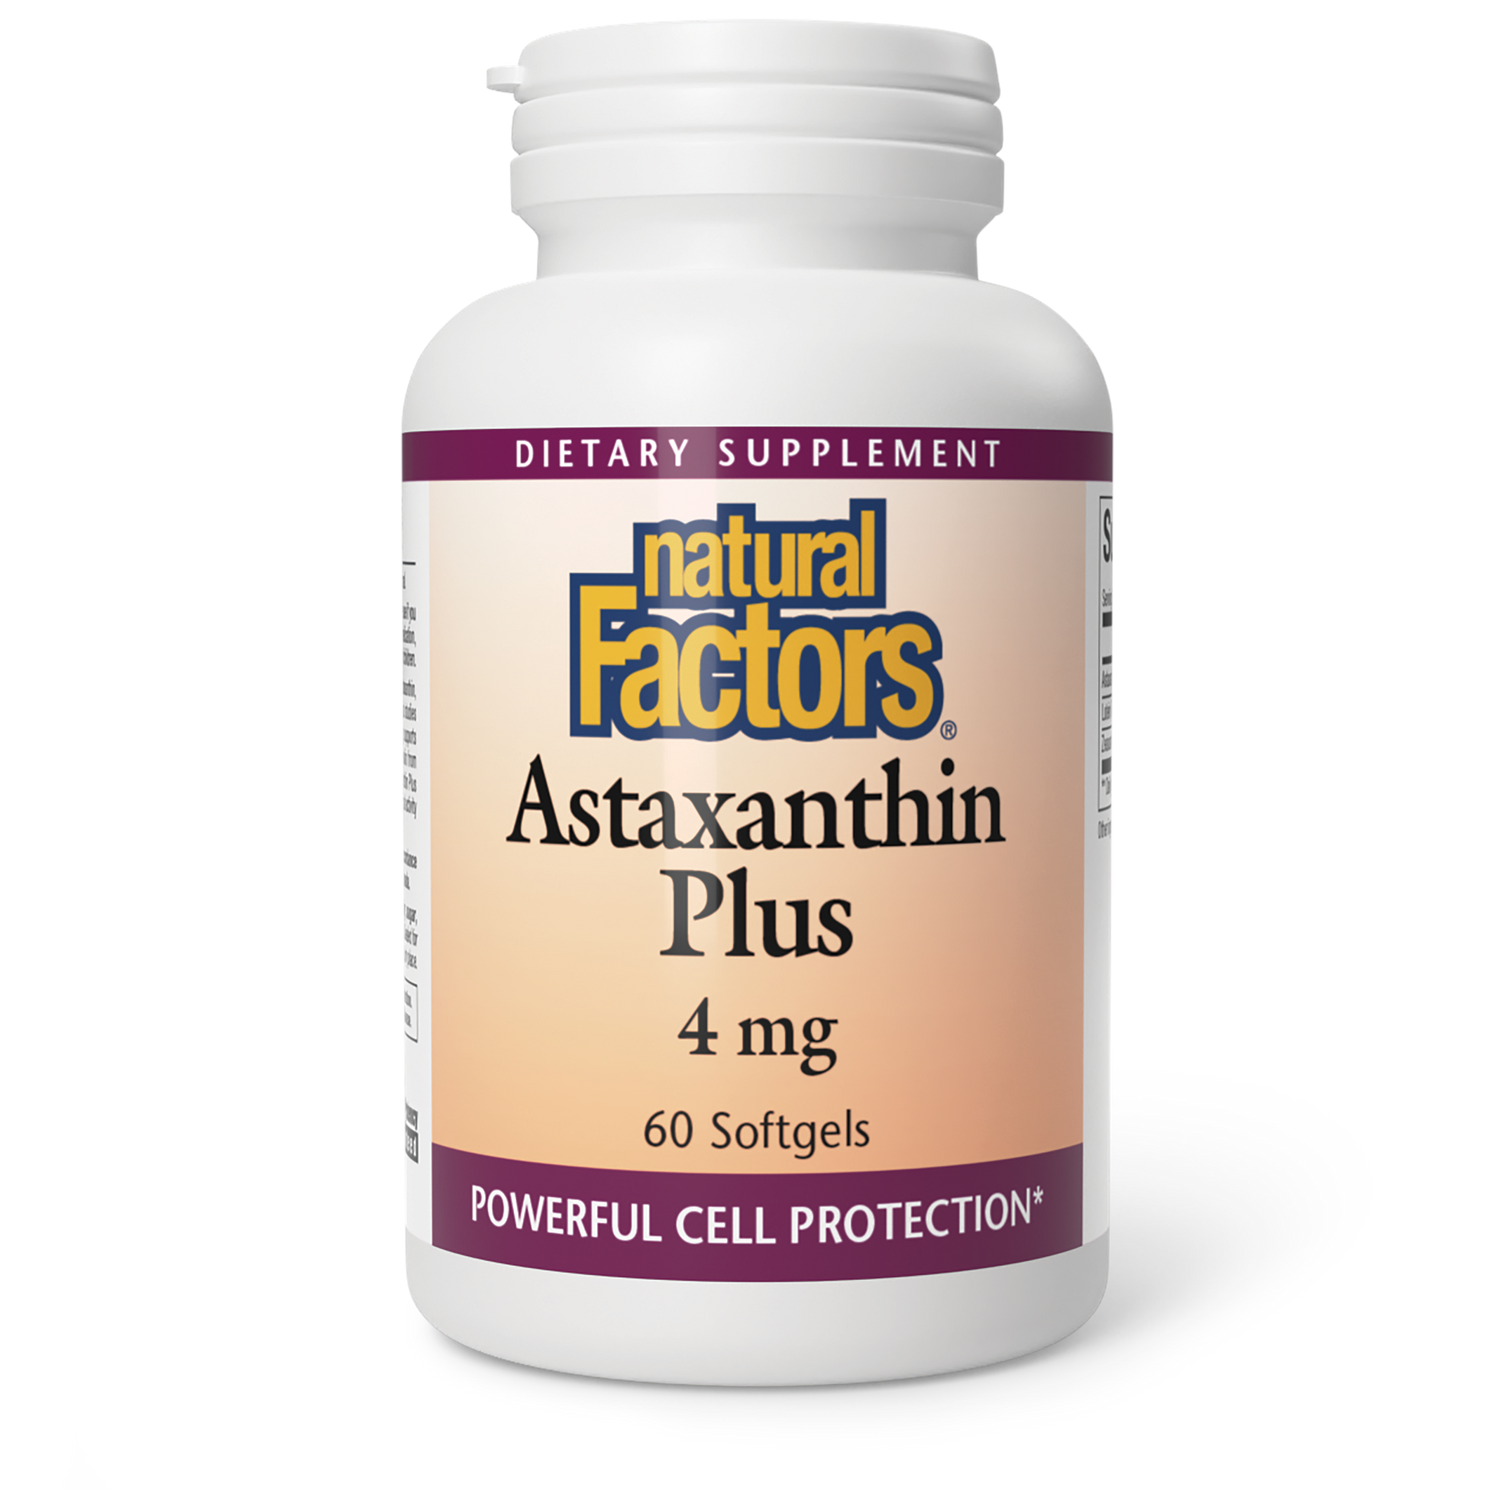 Astaxanthin Plus|variant|hi-res|1013U